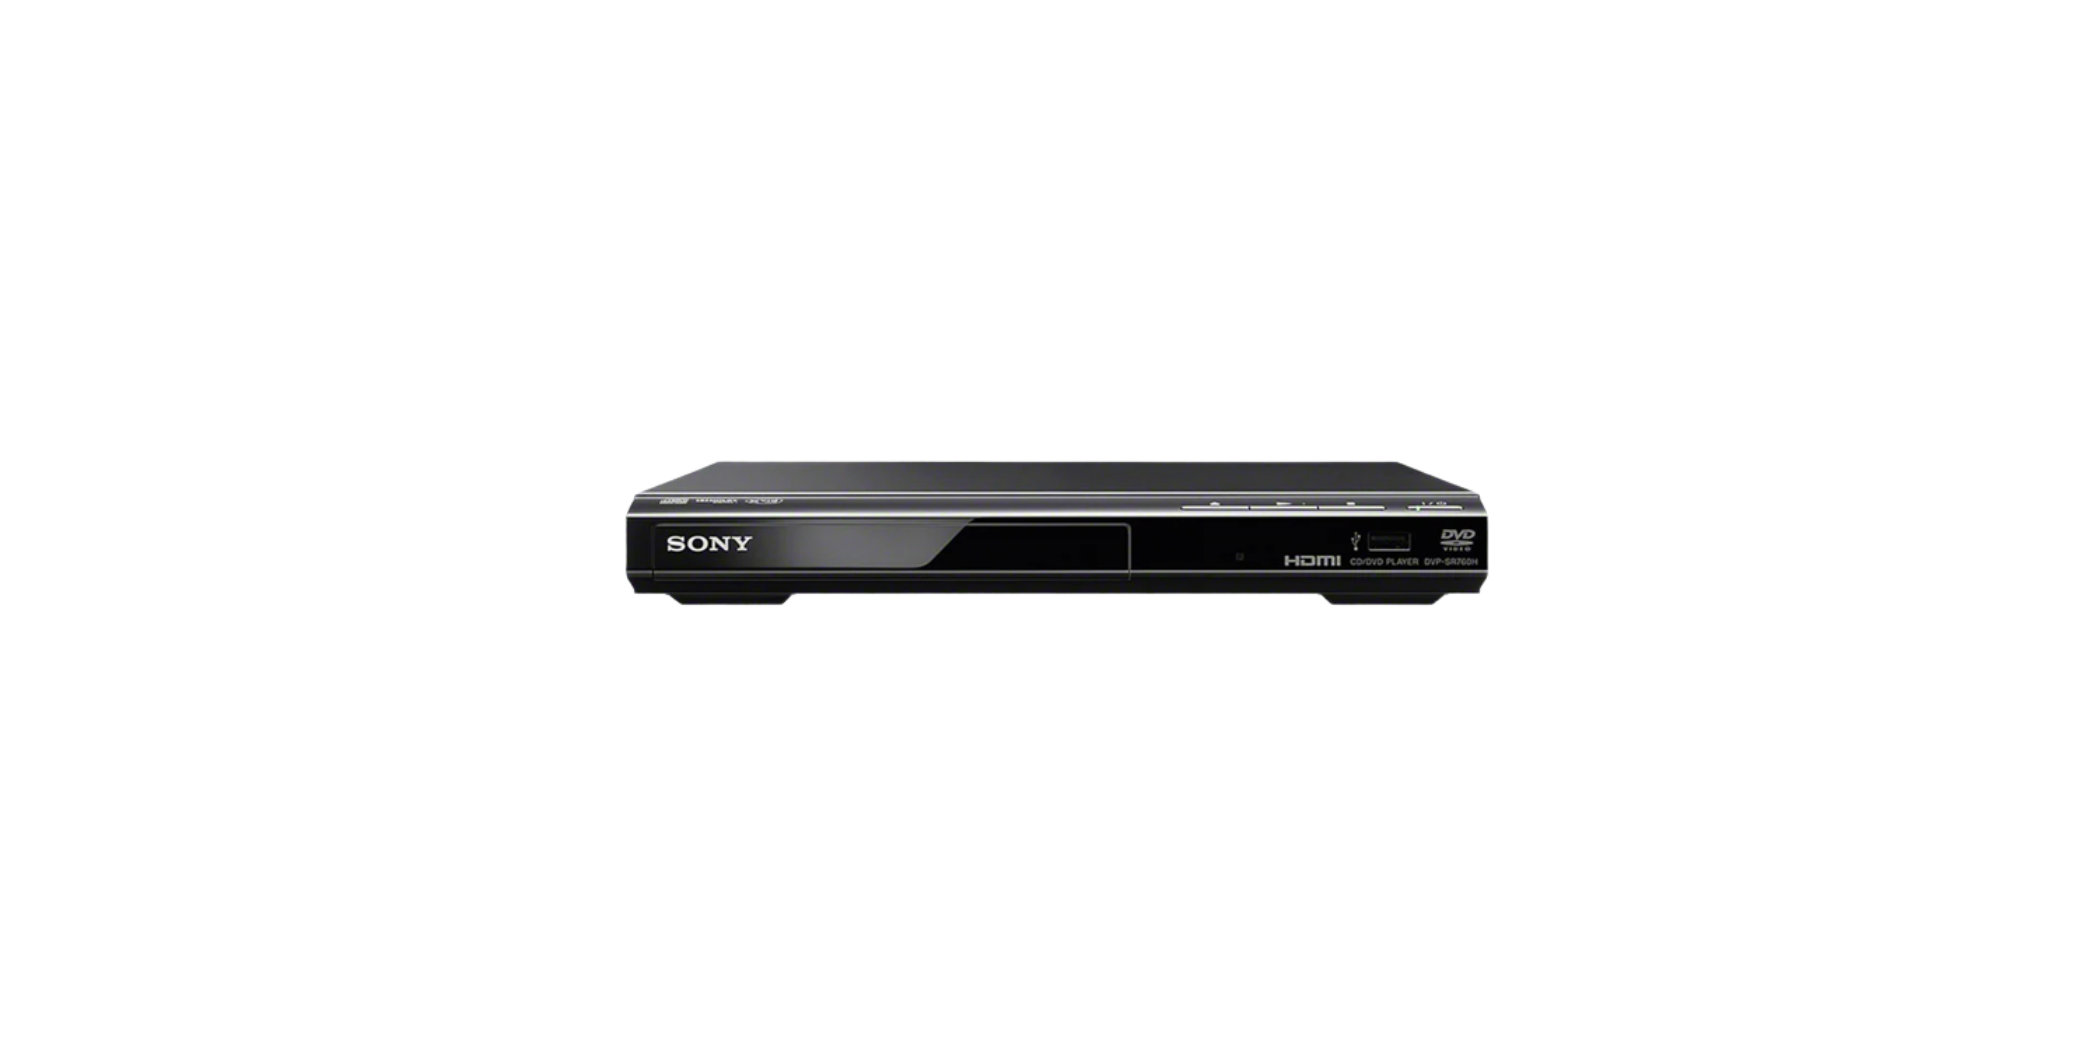 Sony DVP-SR760HP DVD Player